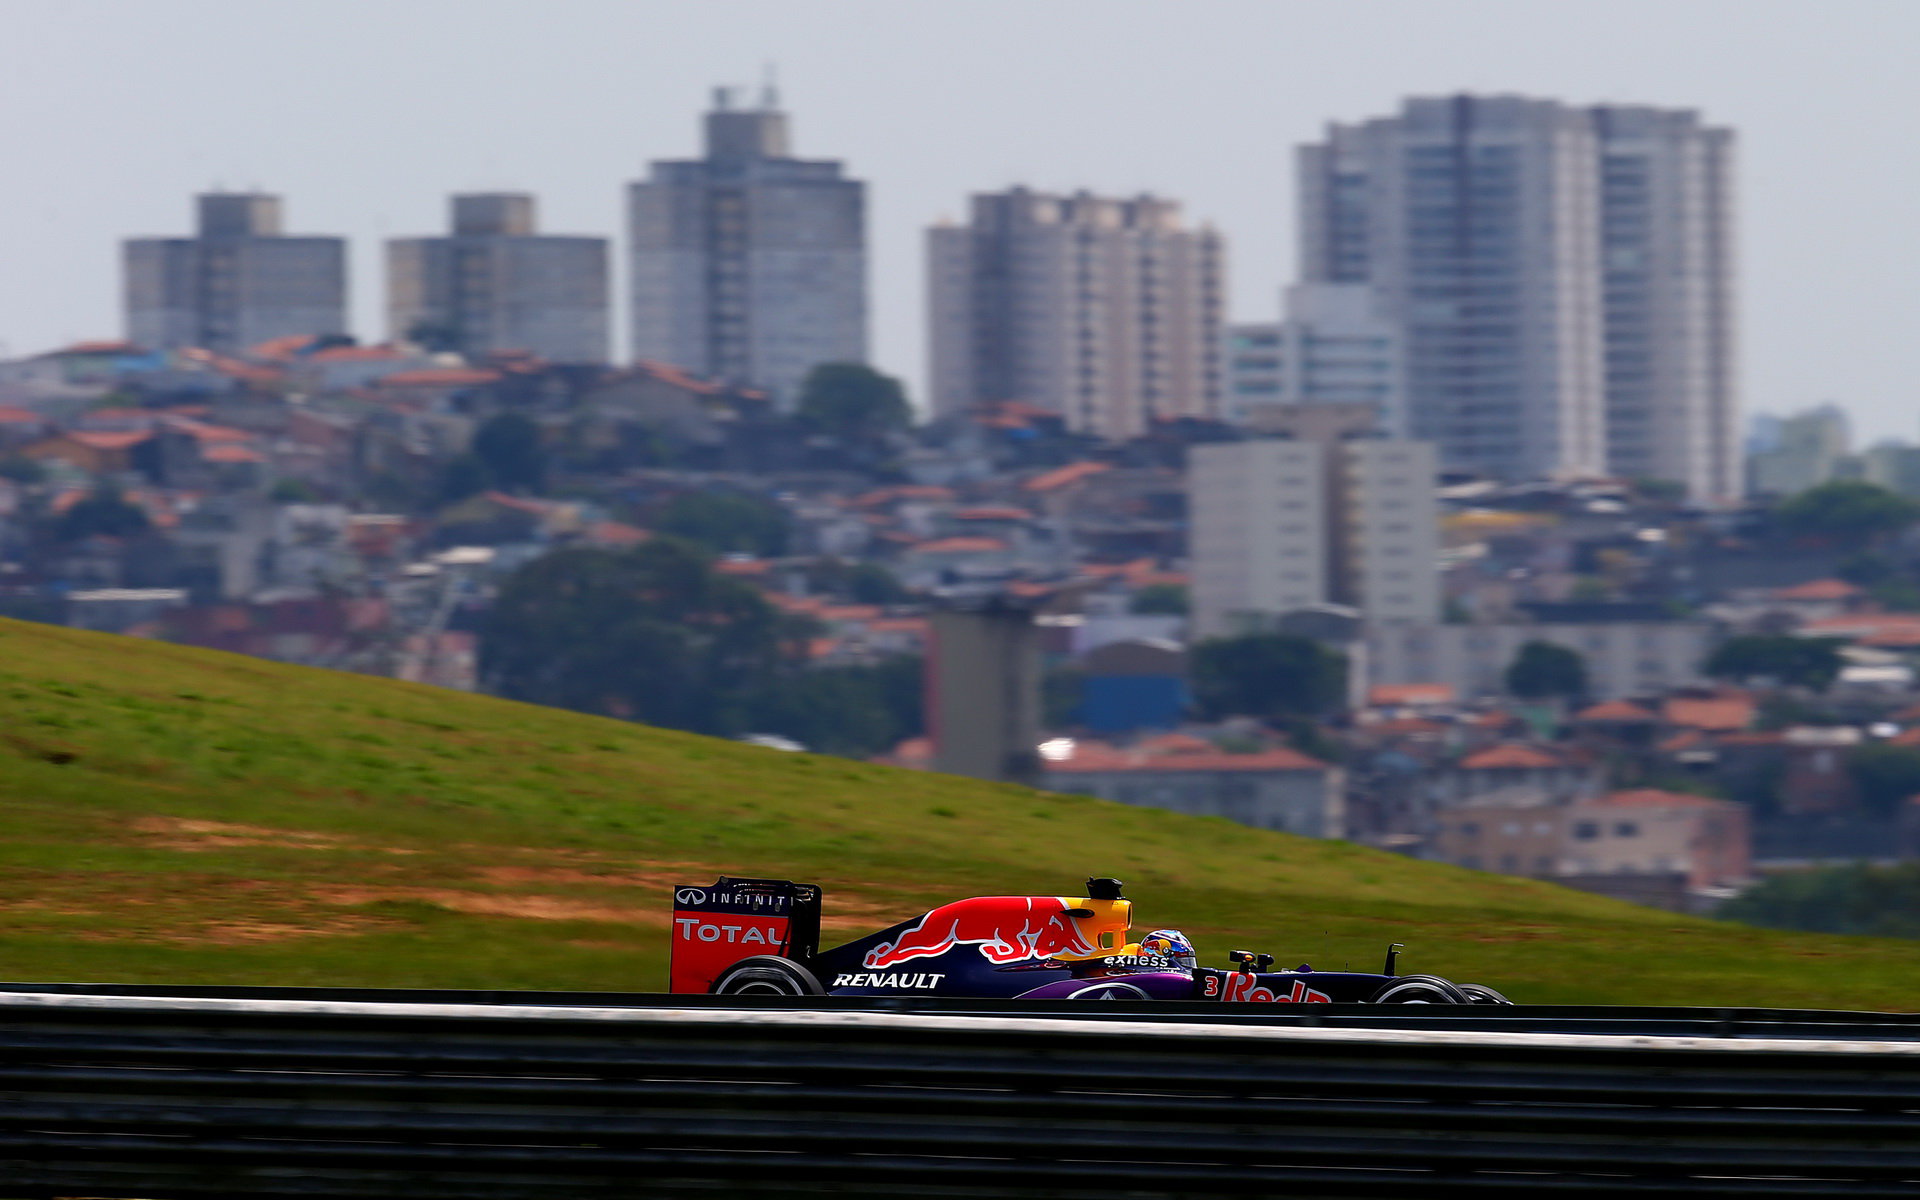 Daniel Ricciardo v Brazílii